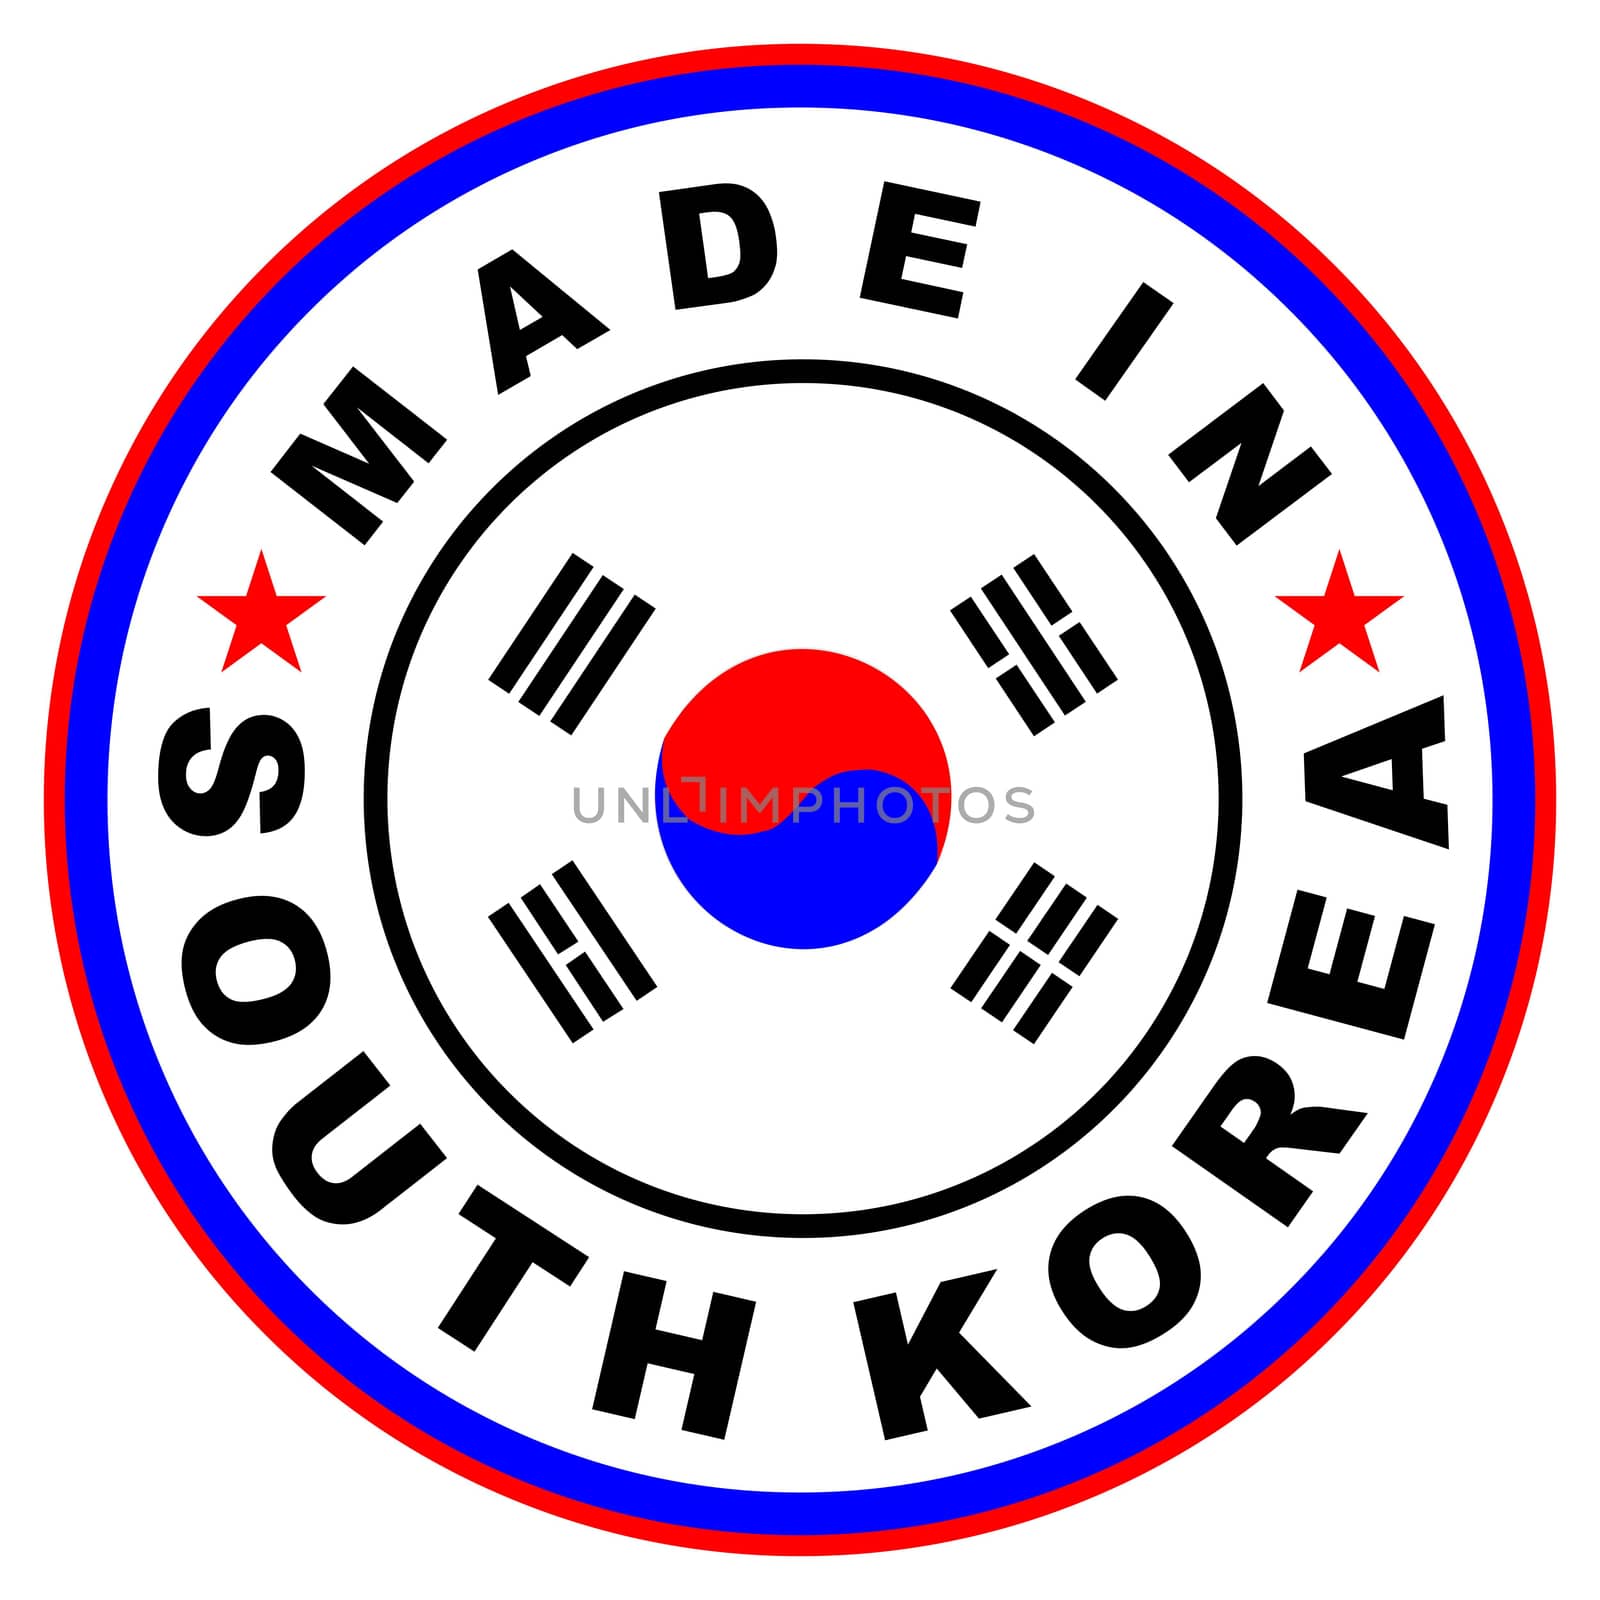 made in south korea by tony4urban